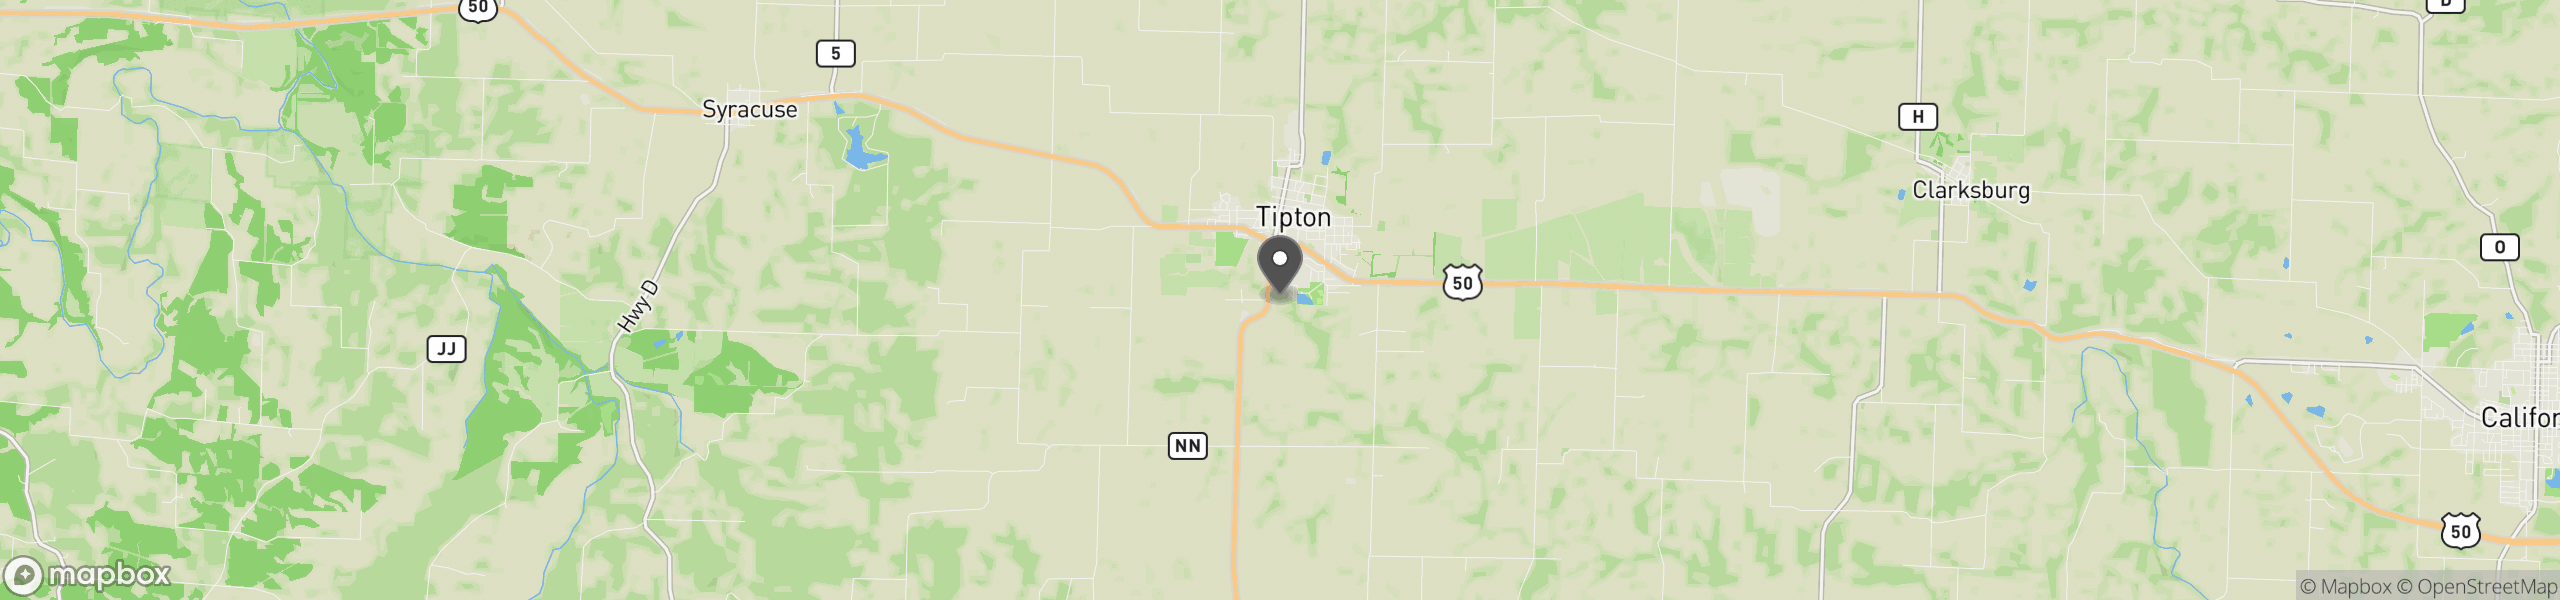 Tipton, MO 65081